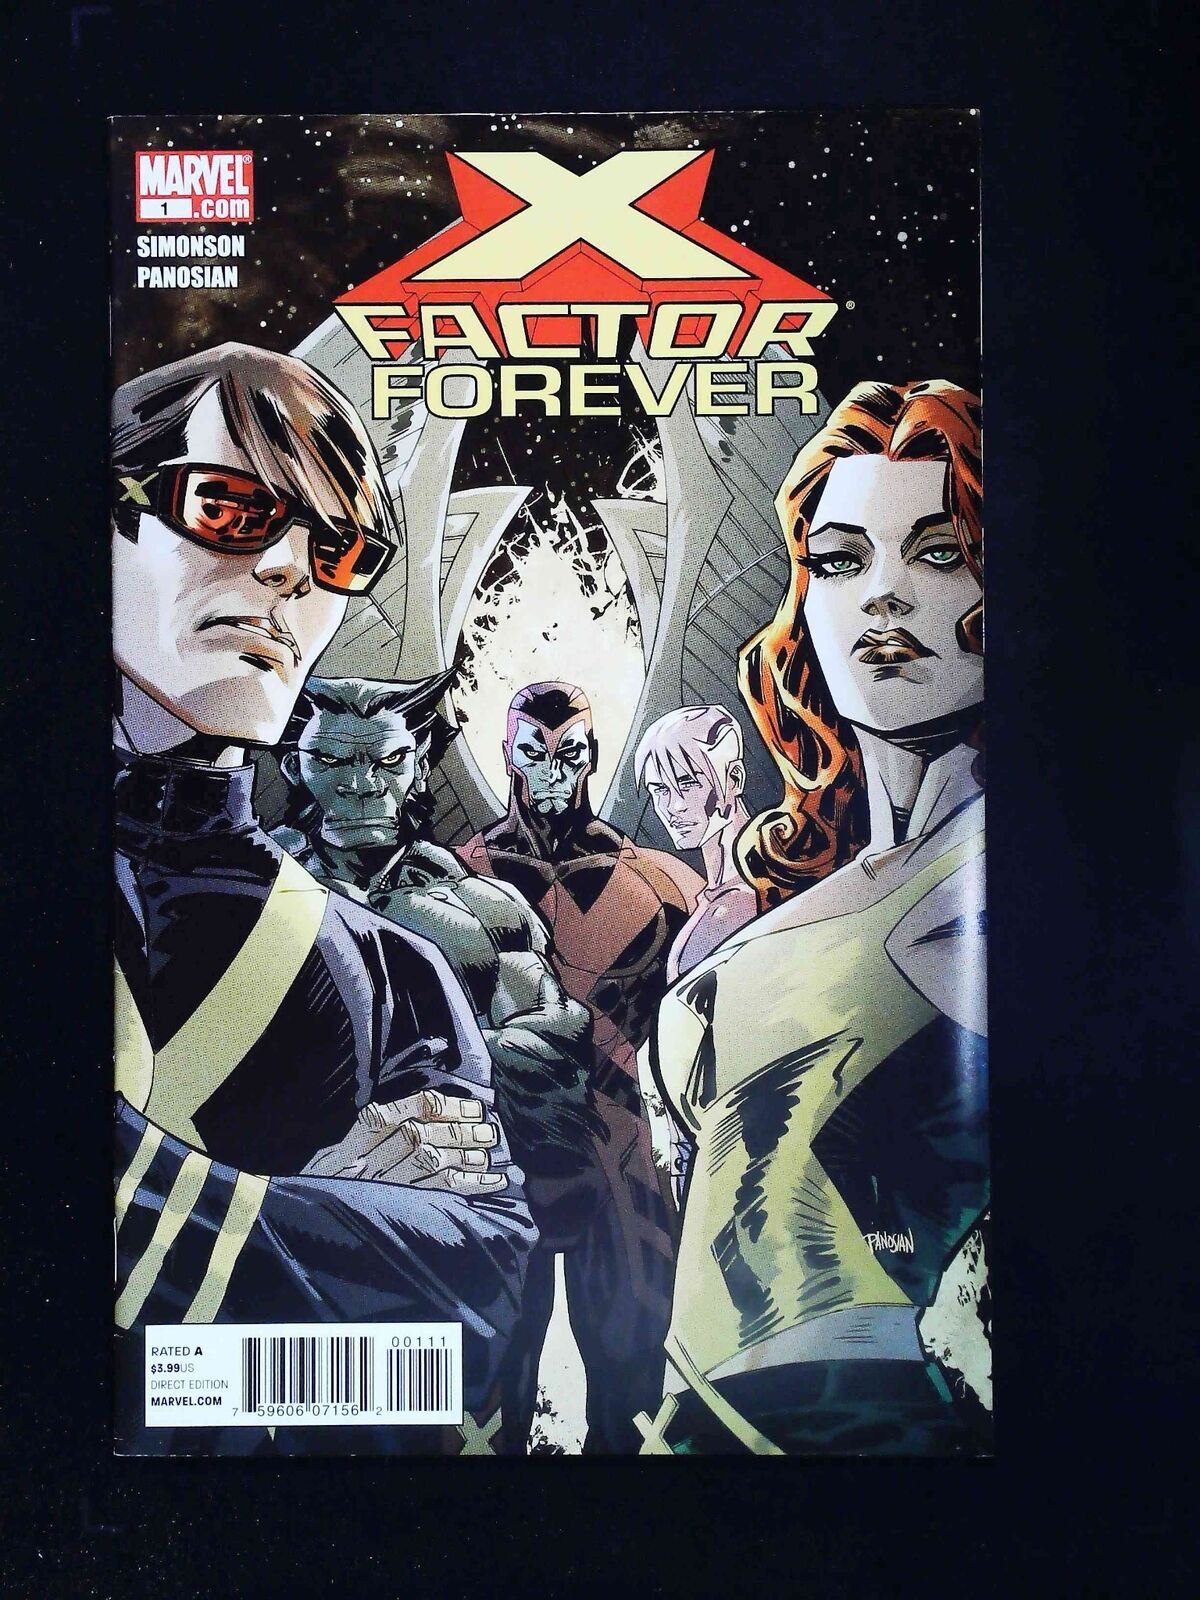 X-Factor  Forever  #1  Marvel Comics 2010 Vf+